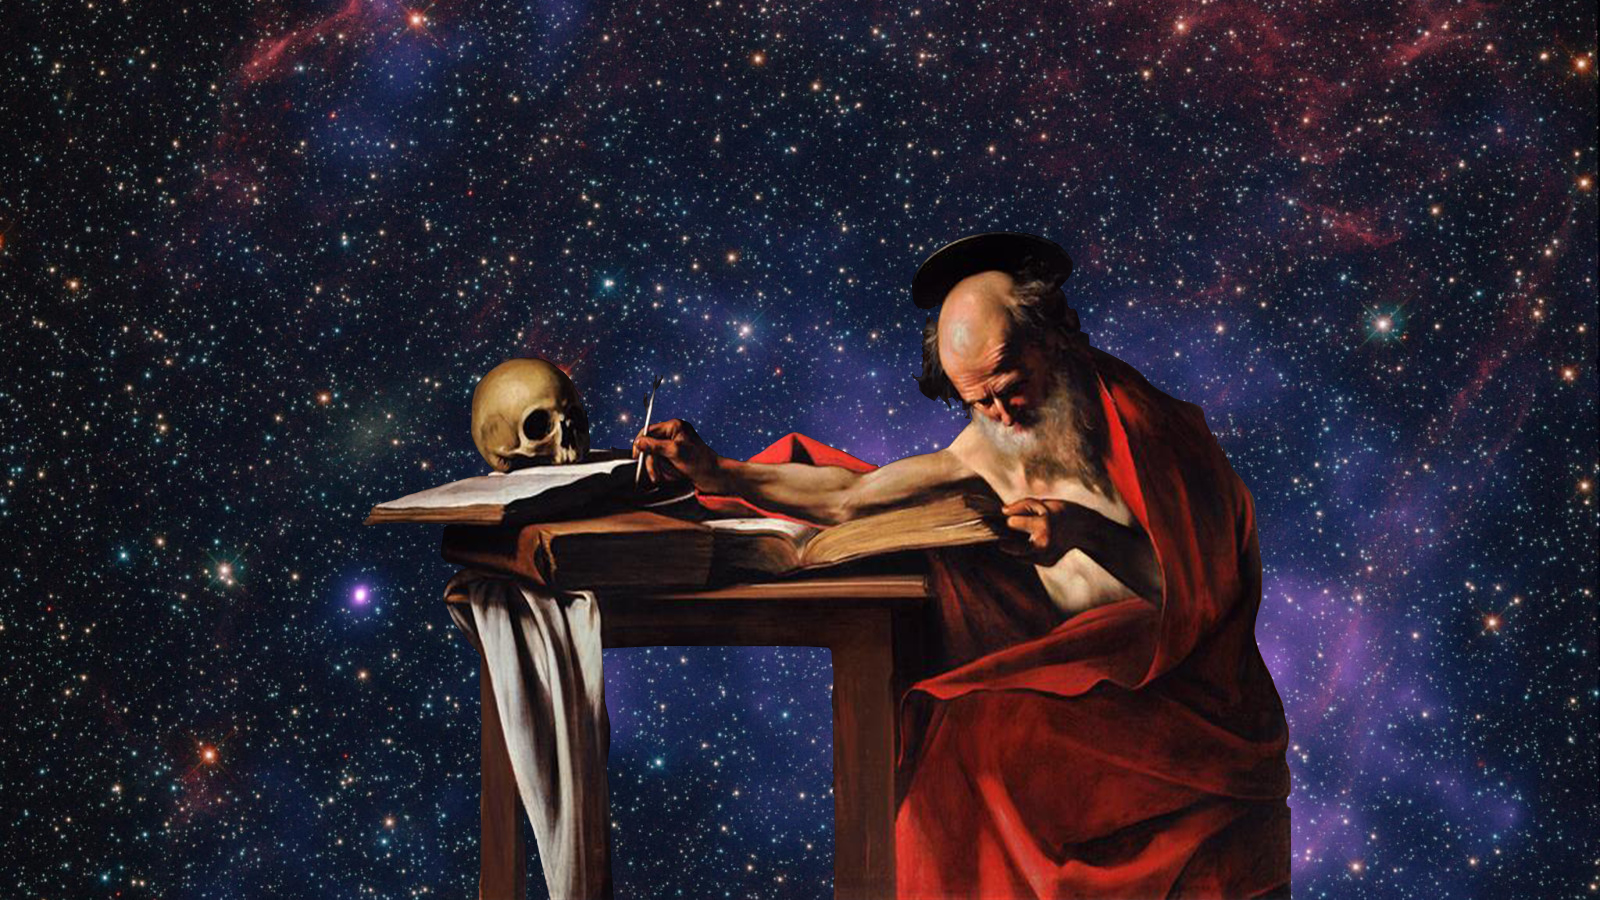 Portada de Obra de Caravaggio de un hombre viejo cubierot por una manta roja escribiendo frente a un escritorio con libros voluminosos y un cráneo, en un fondo del espacio.